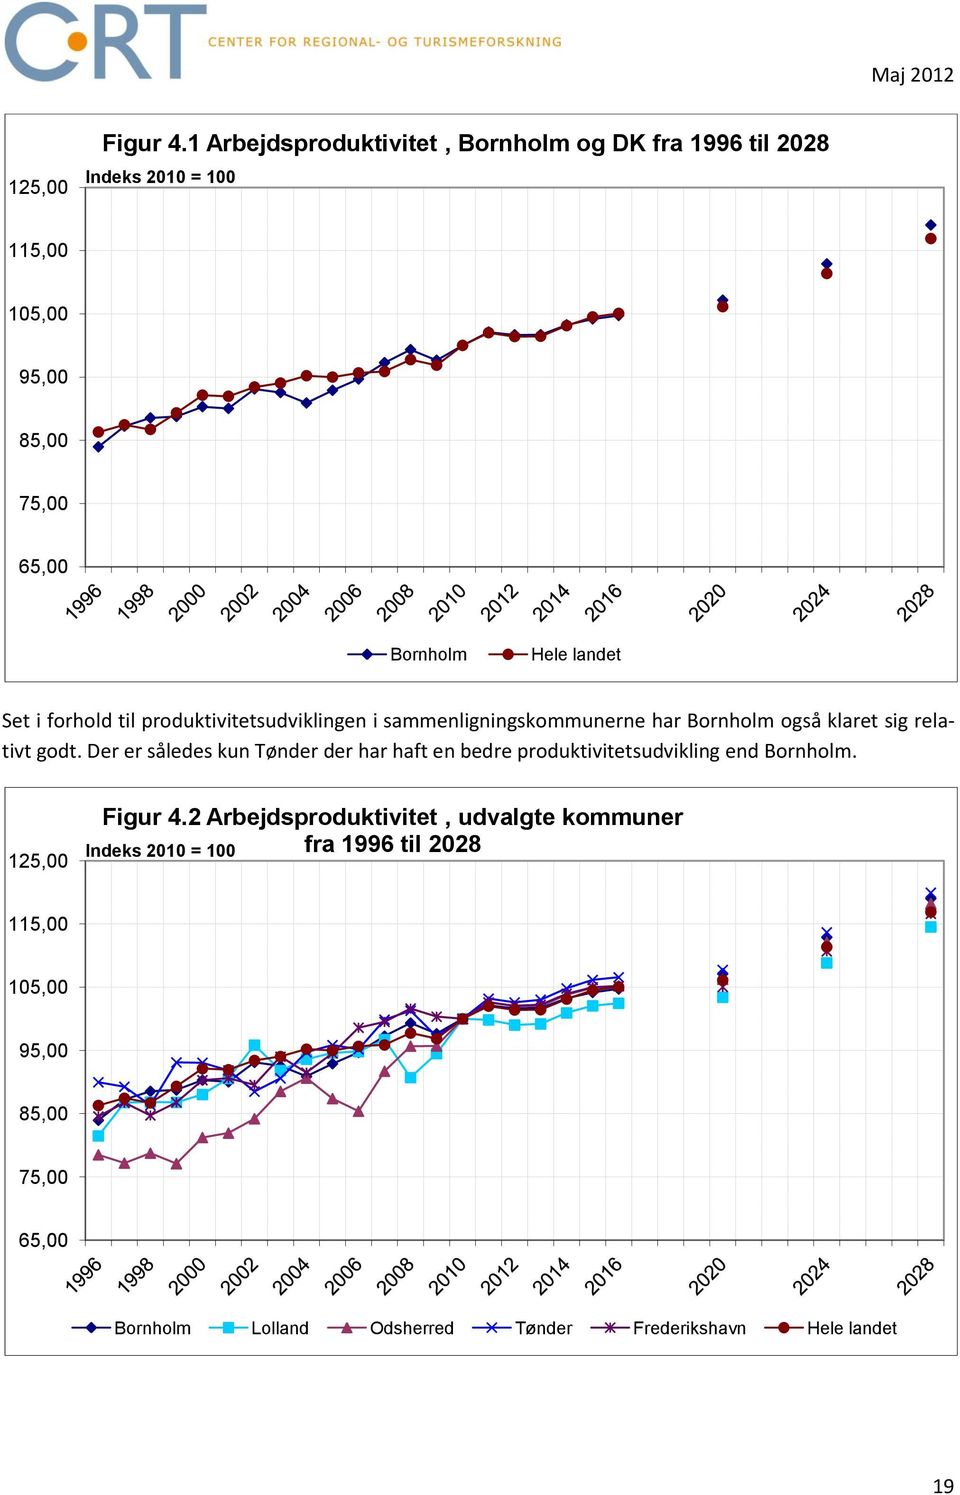 Set i forhold til produktivitetsudviklingen i sammenligningskommunerne har Bornholm også klaret sig relativt godt.